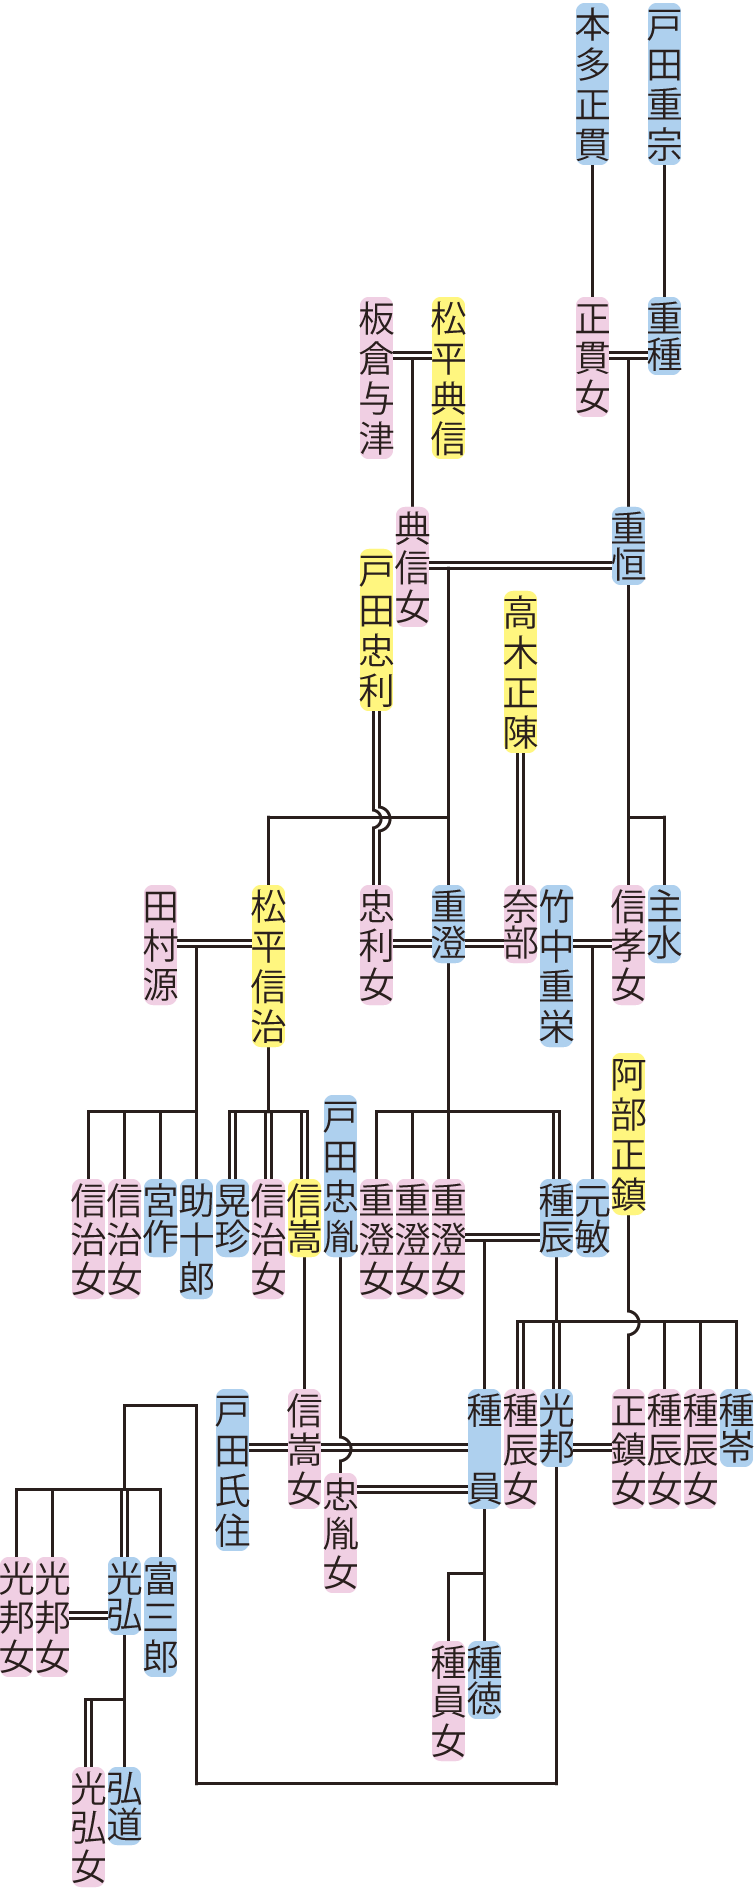 戸田重恒～光弘の系図